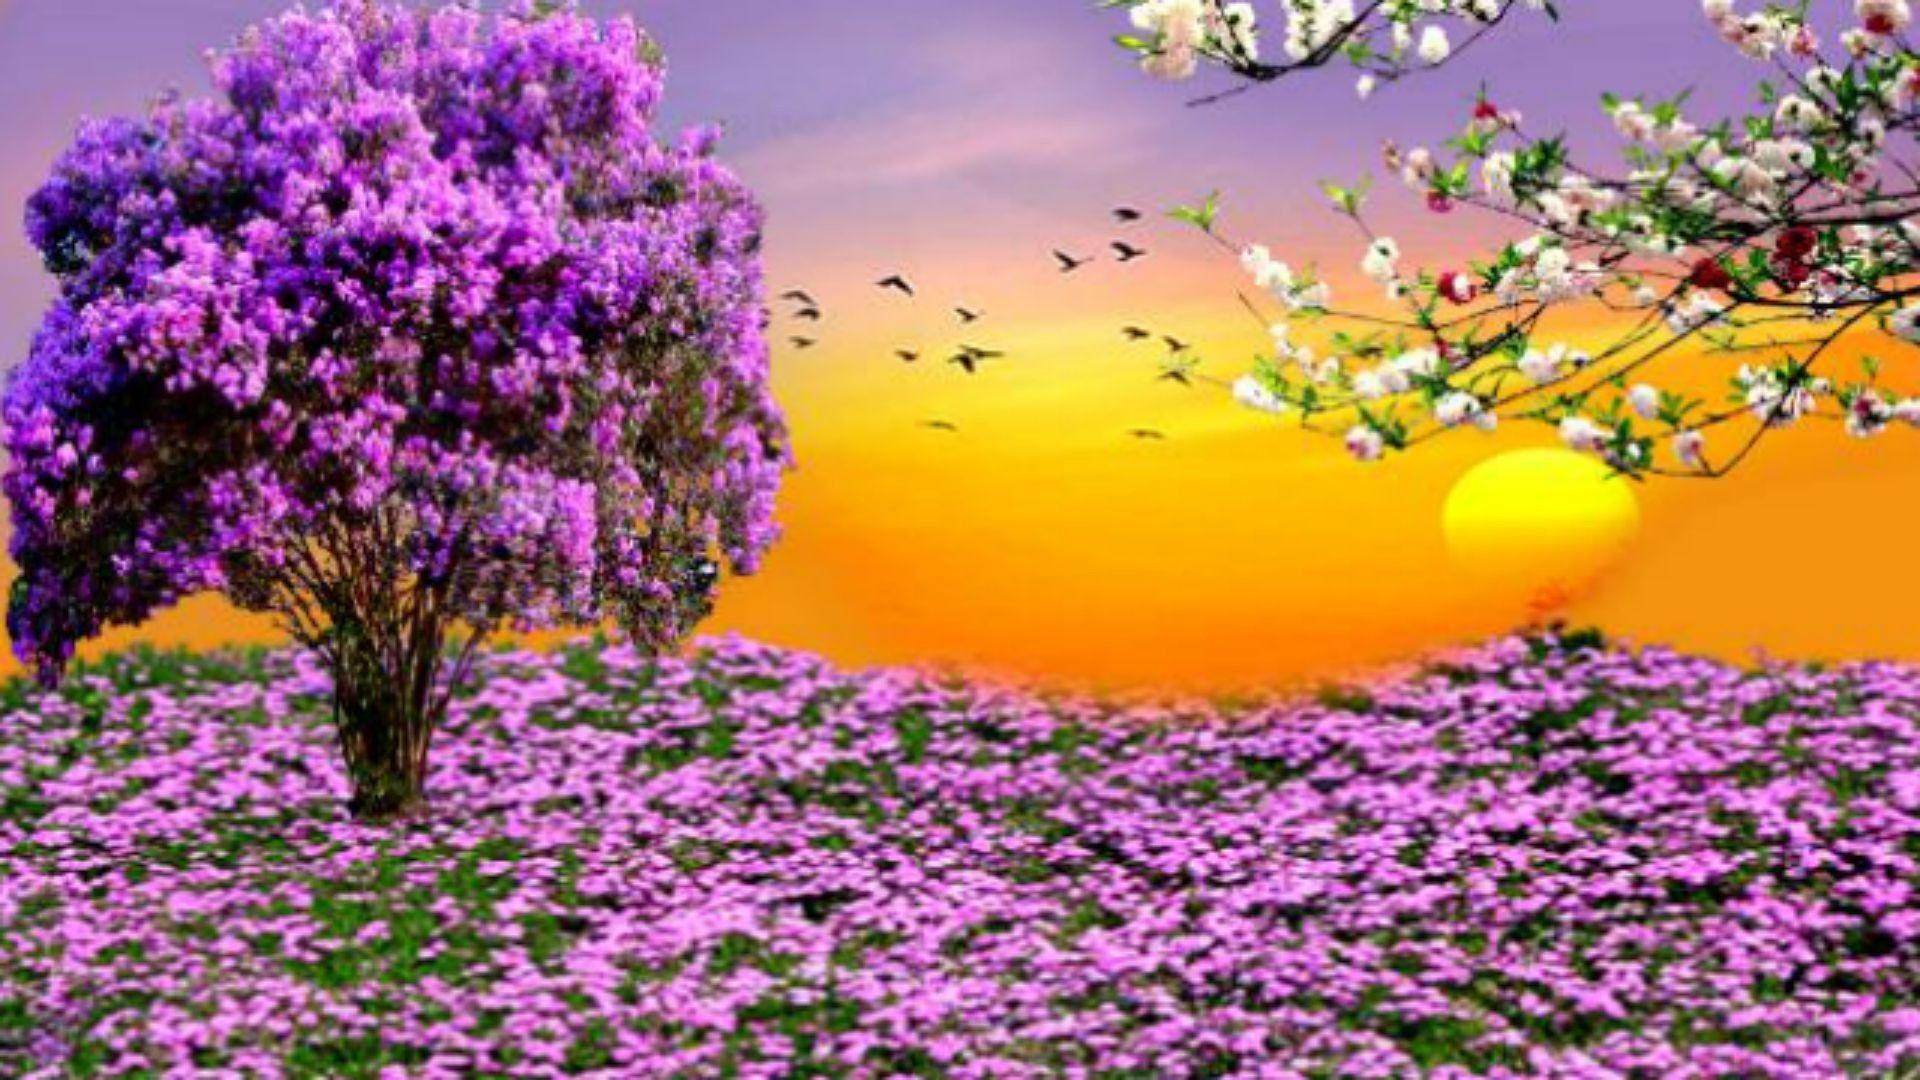 Nature Scenes Desktop Wallpapers - Top Free Nature Scenes Desktop